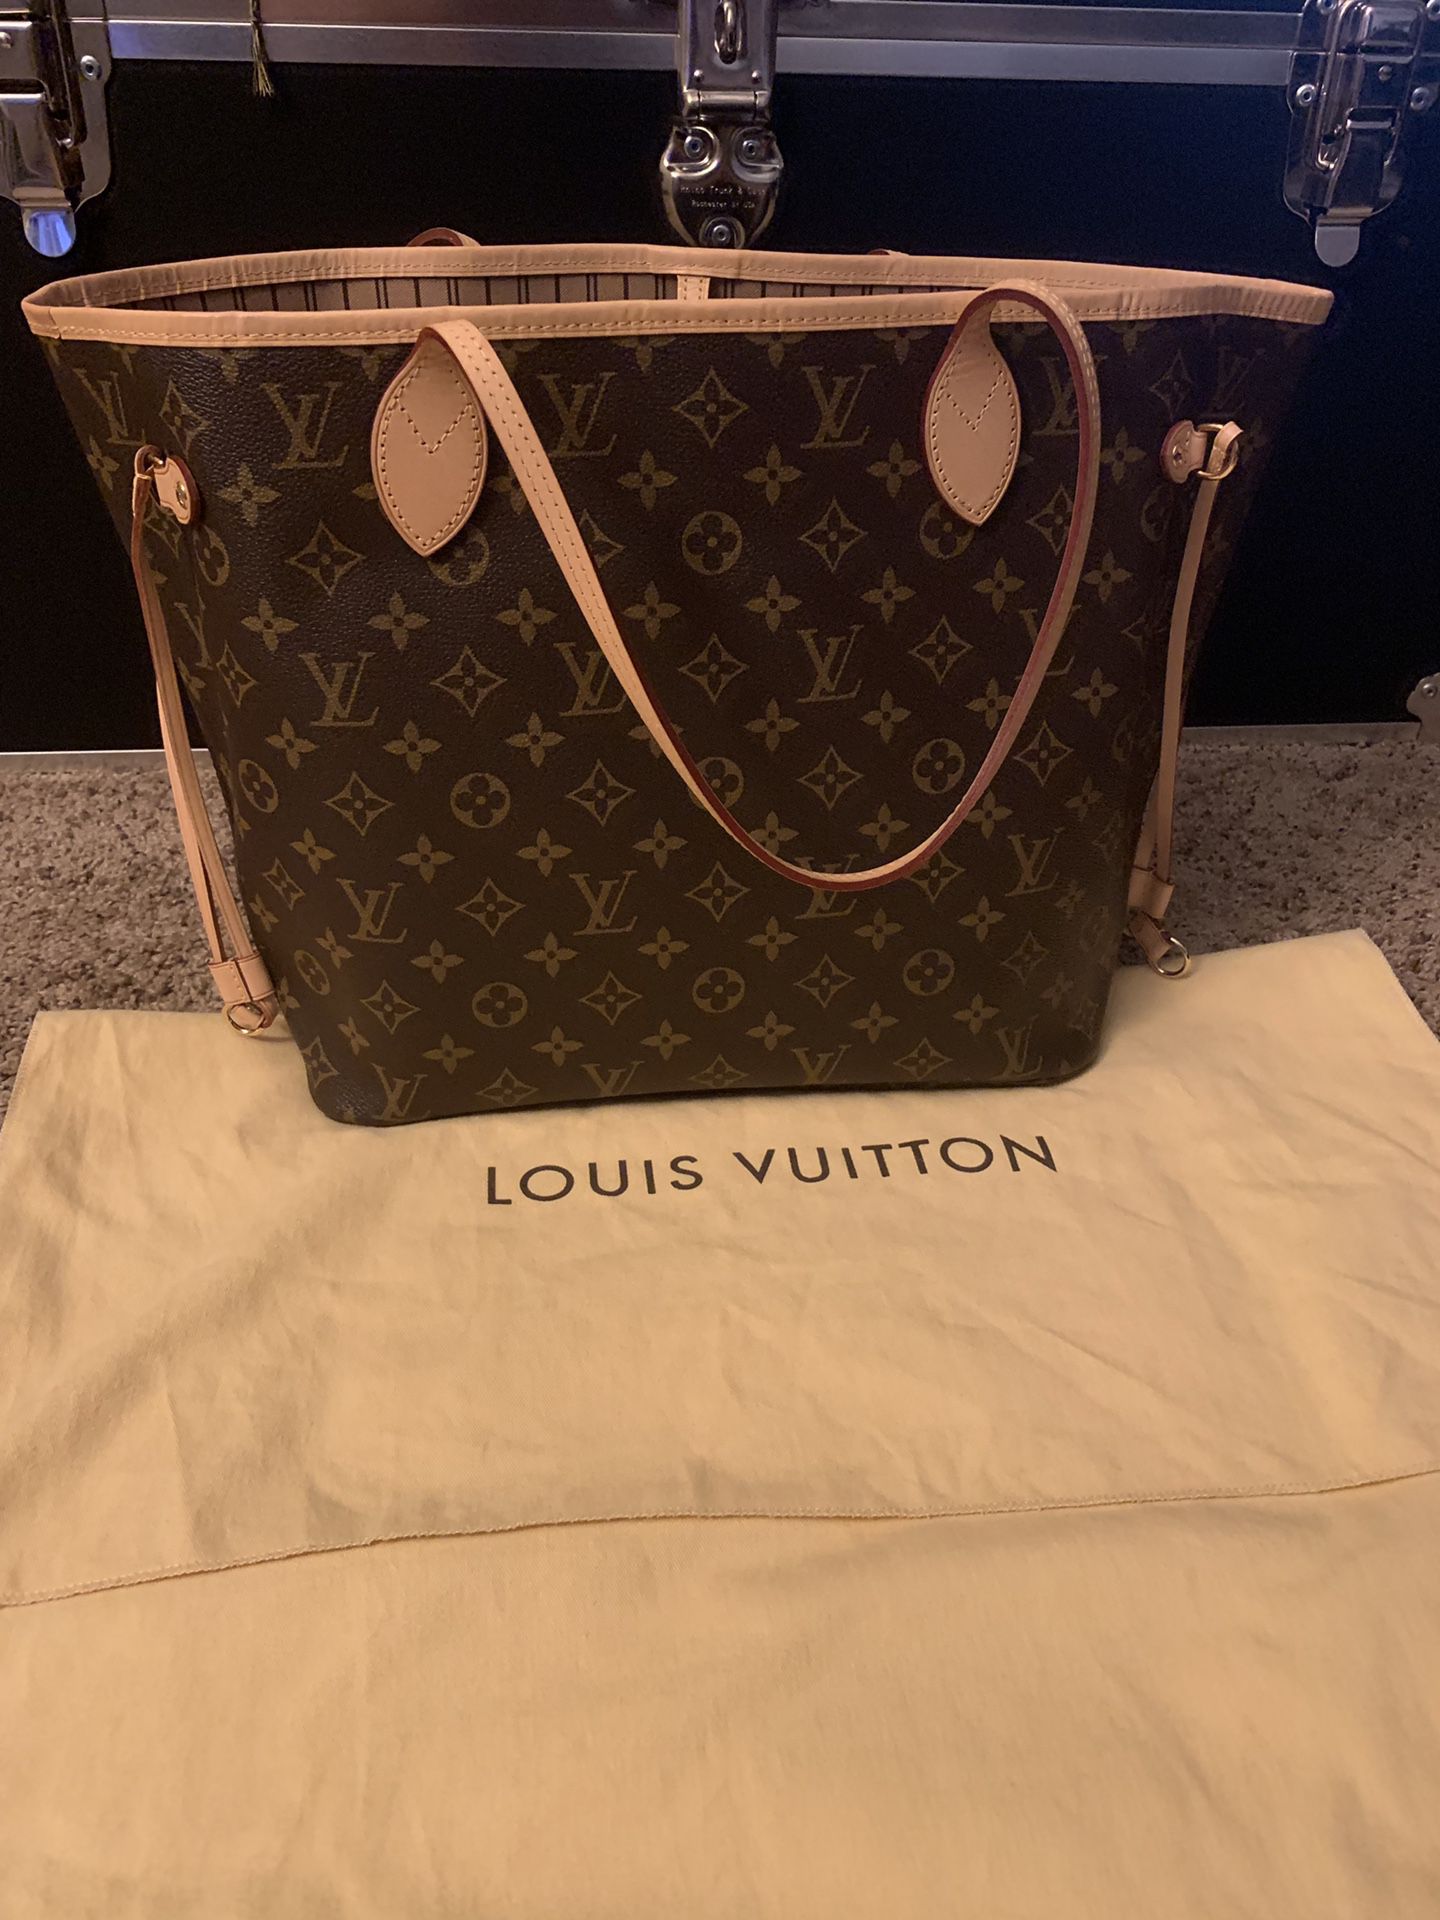 Brand New Louis Vuitton Neverfull MM Bag